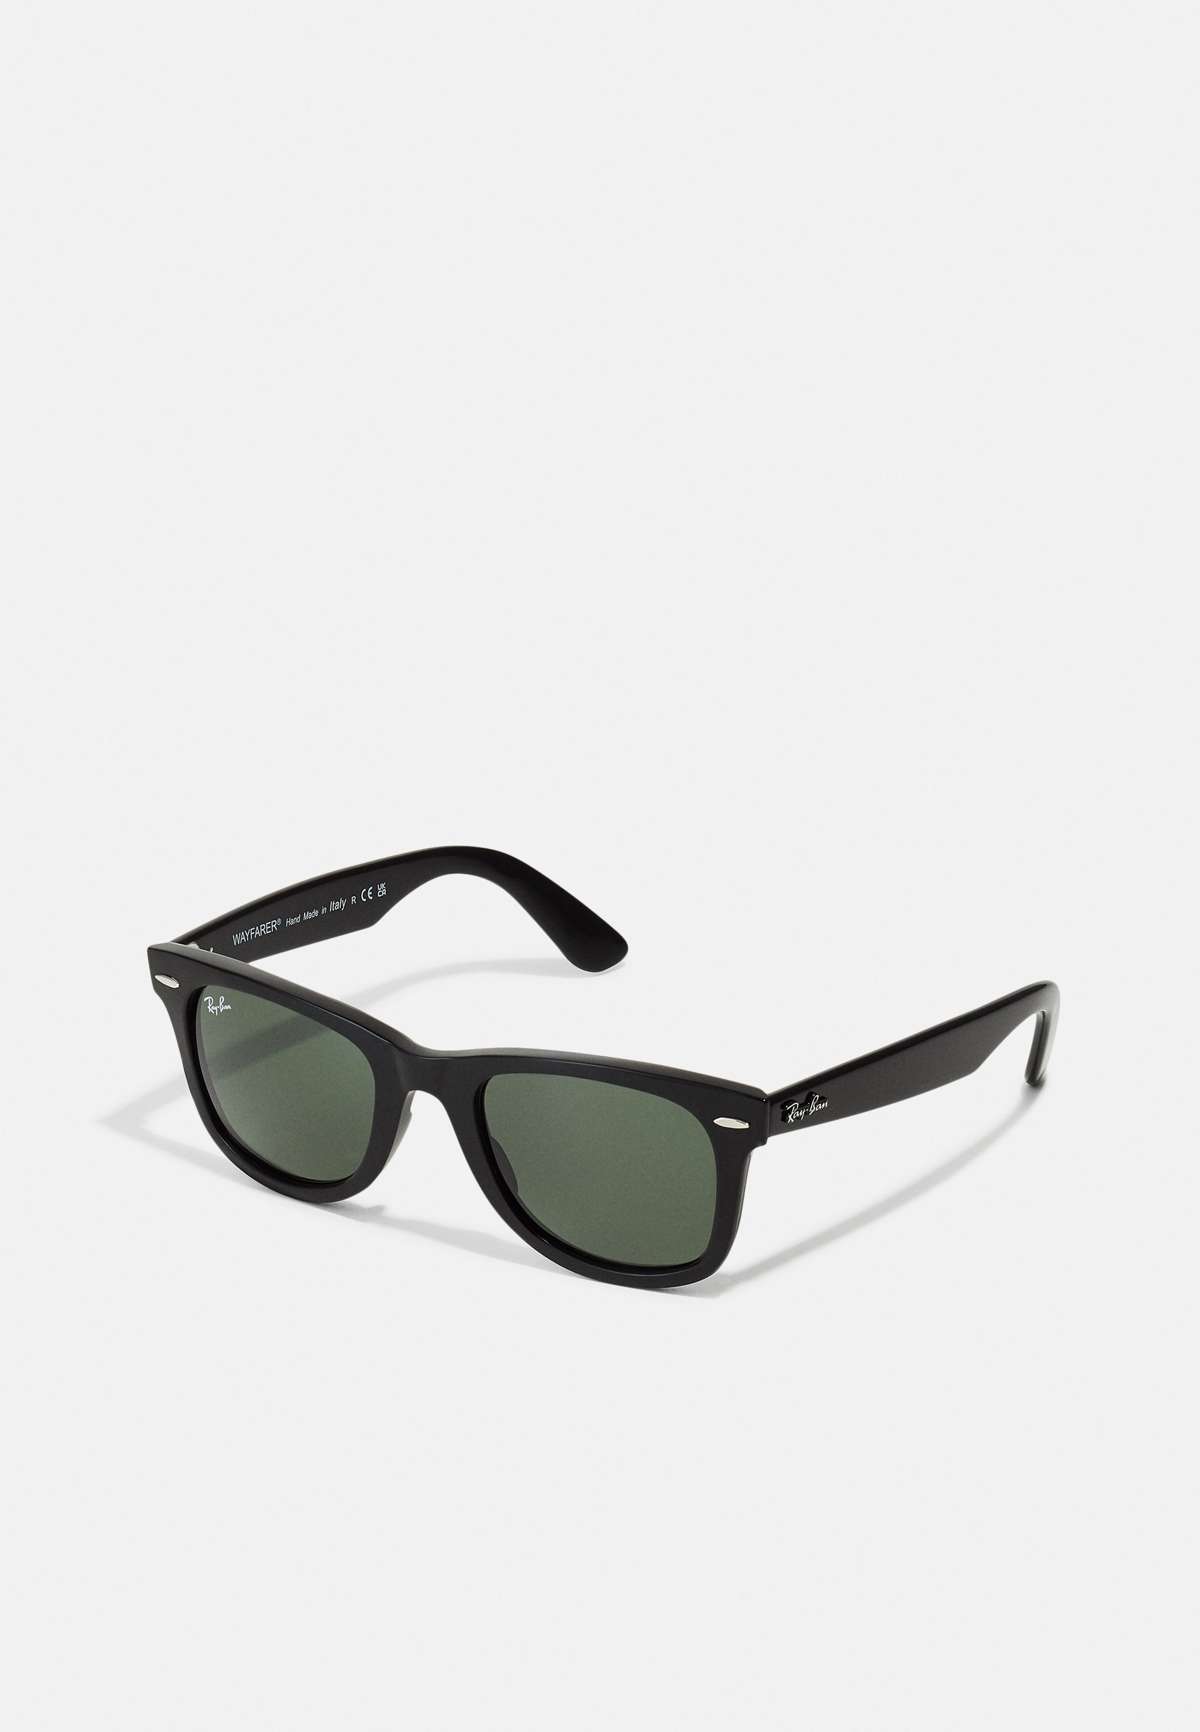 Солнцезащитные очки WAYFARER UNISEX